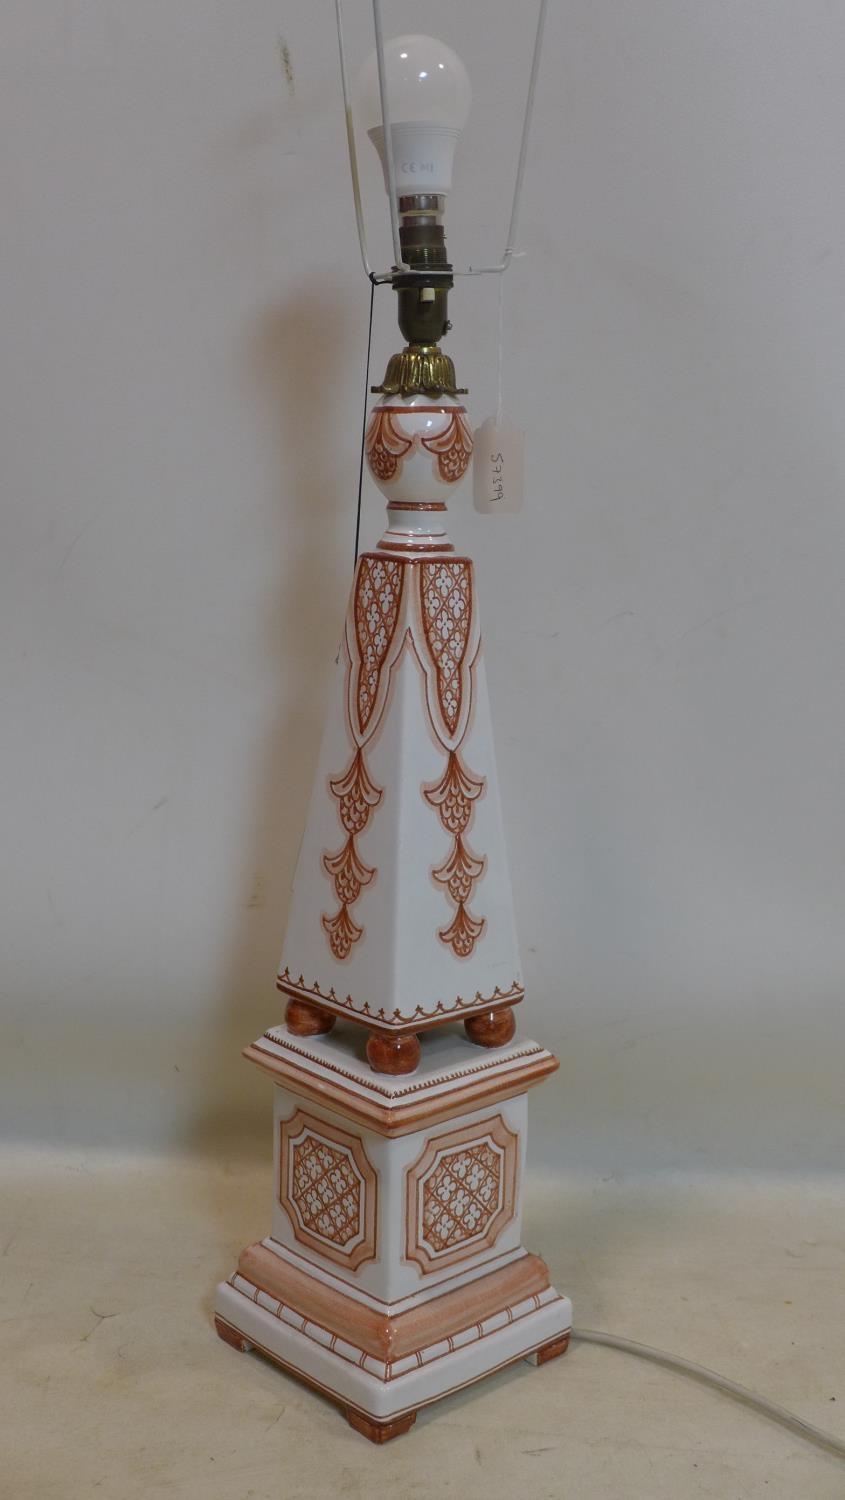 A 20th century Spanish ceramic table lamp, H.62cm